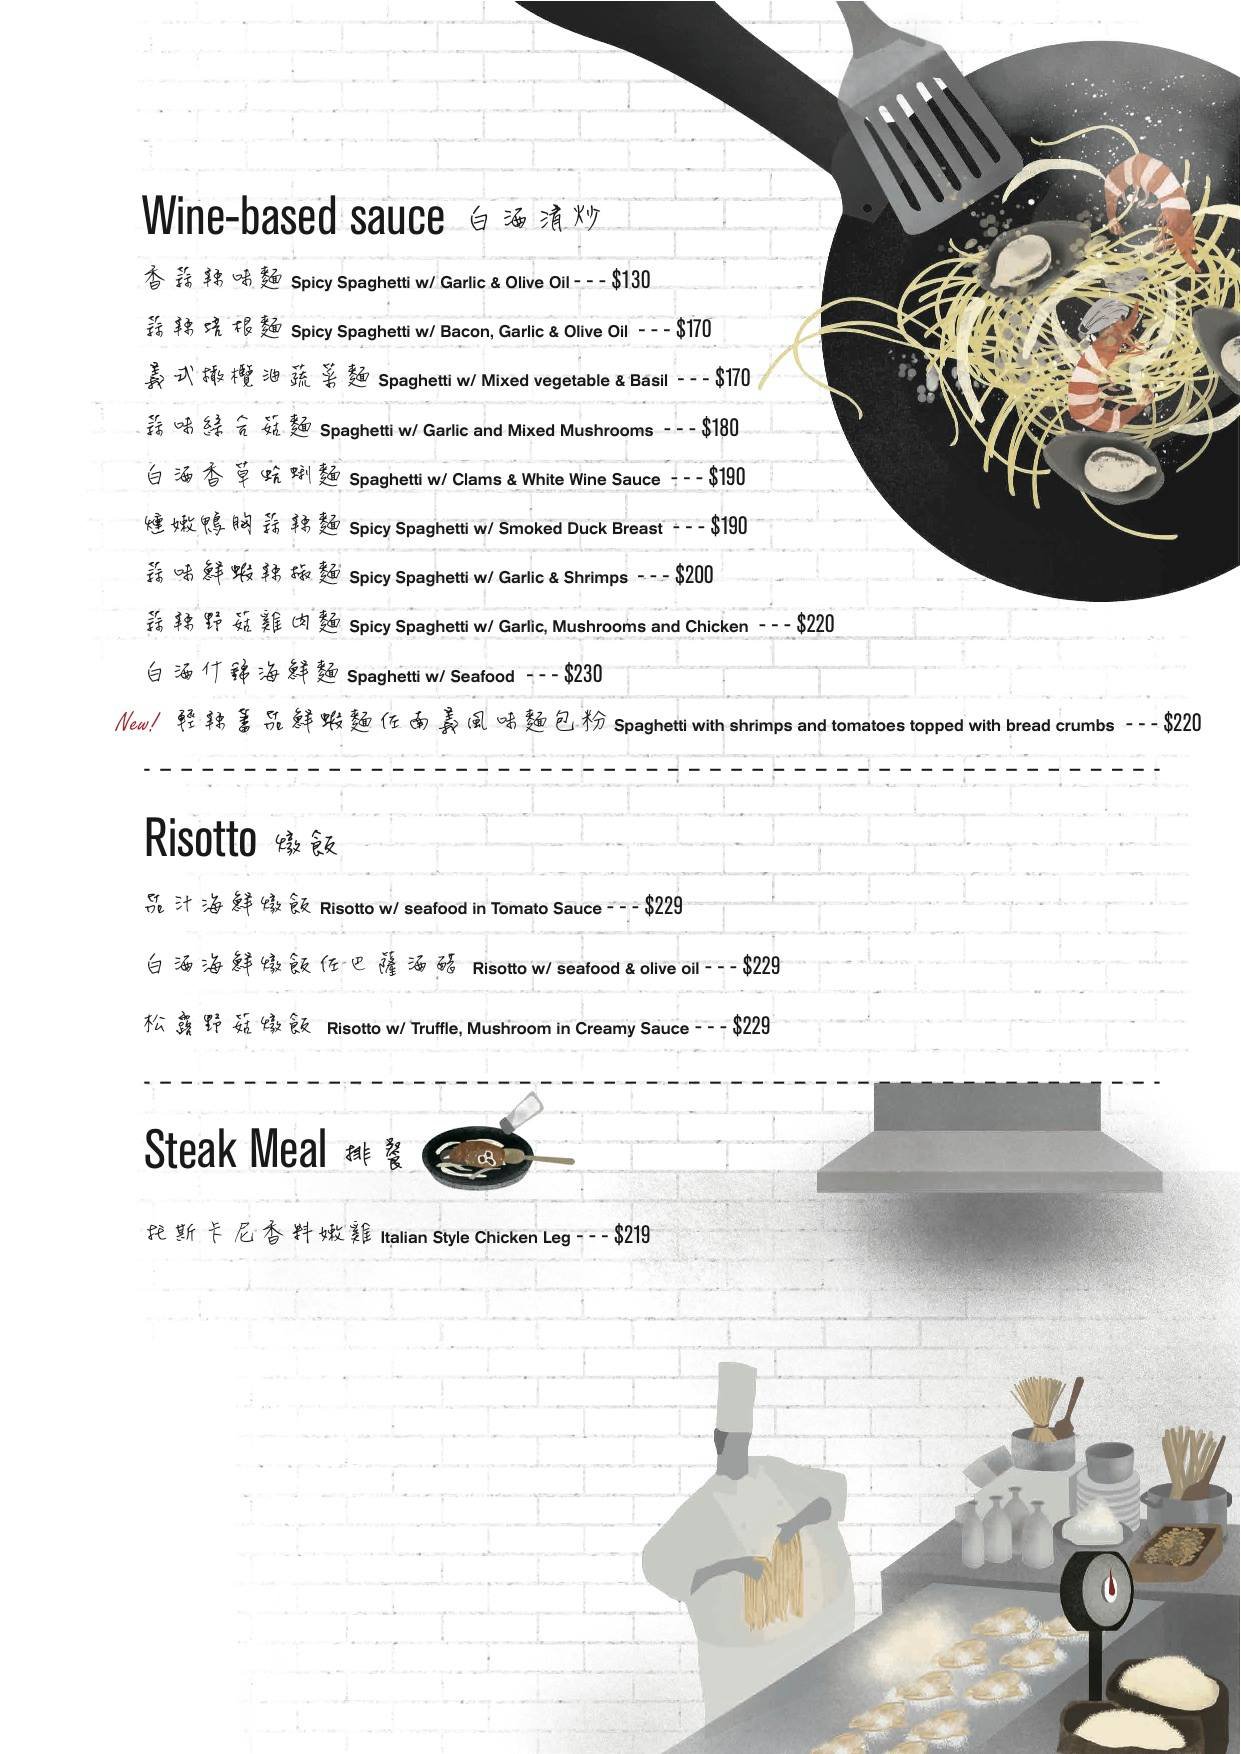 2014 menu-5.jpg